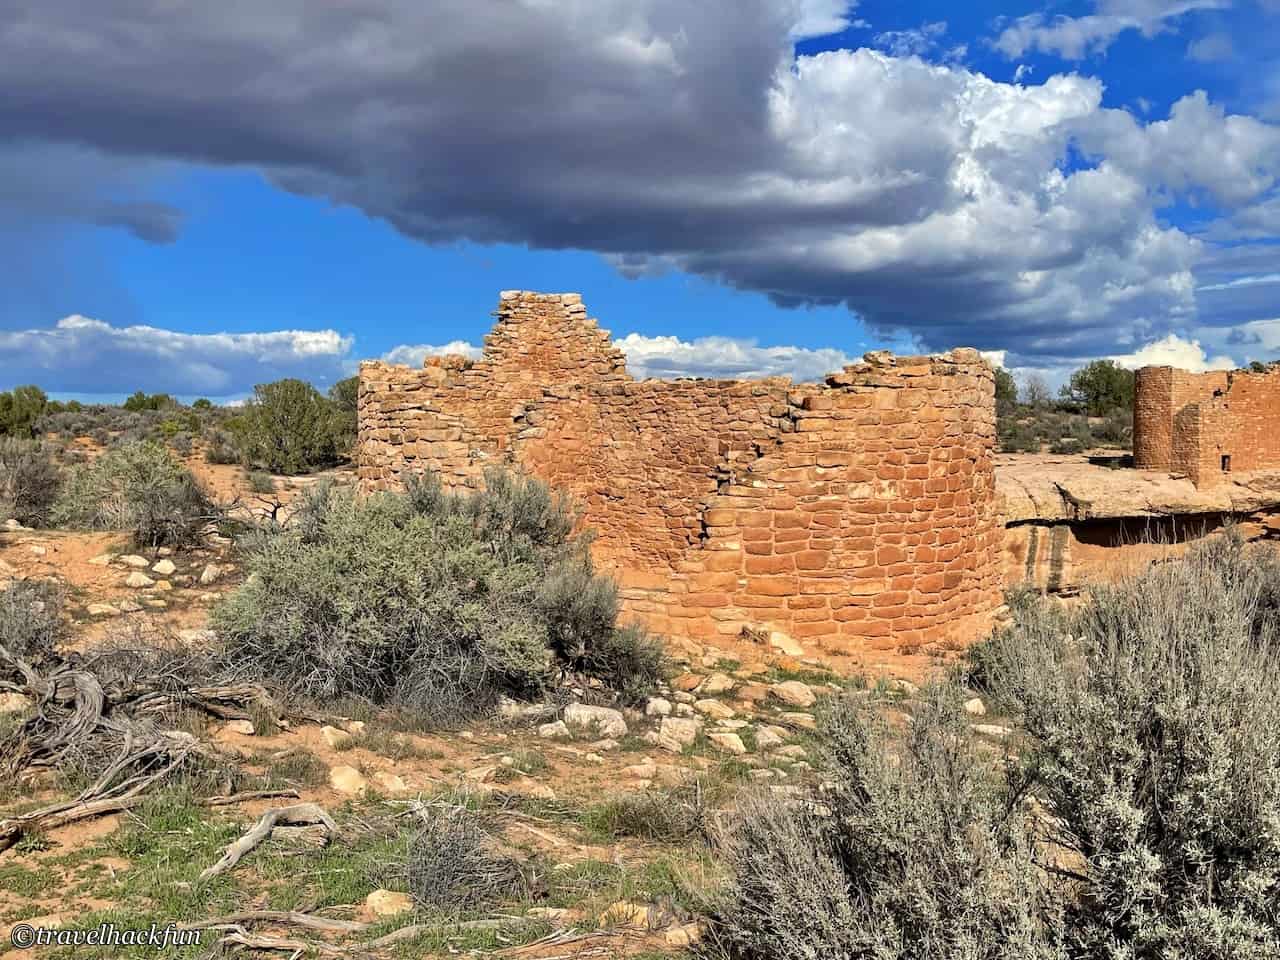 Hovenweep,ancient puebloan 19